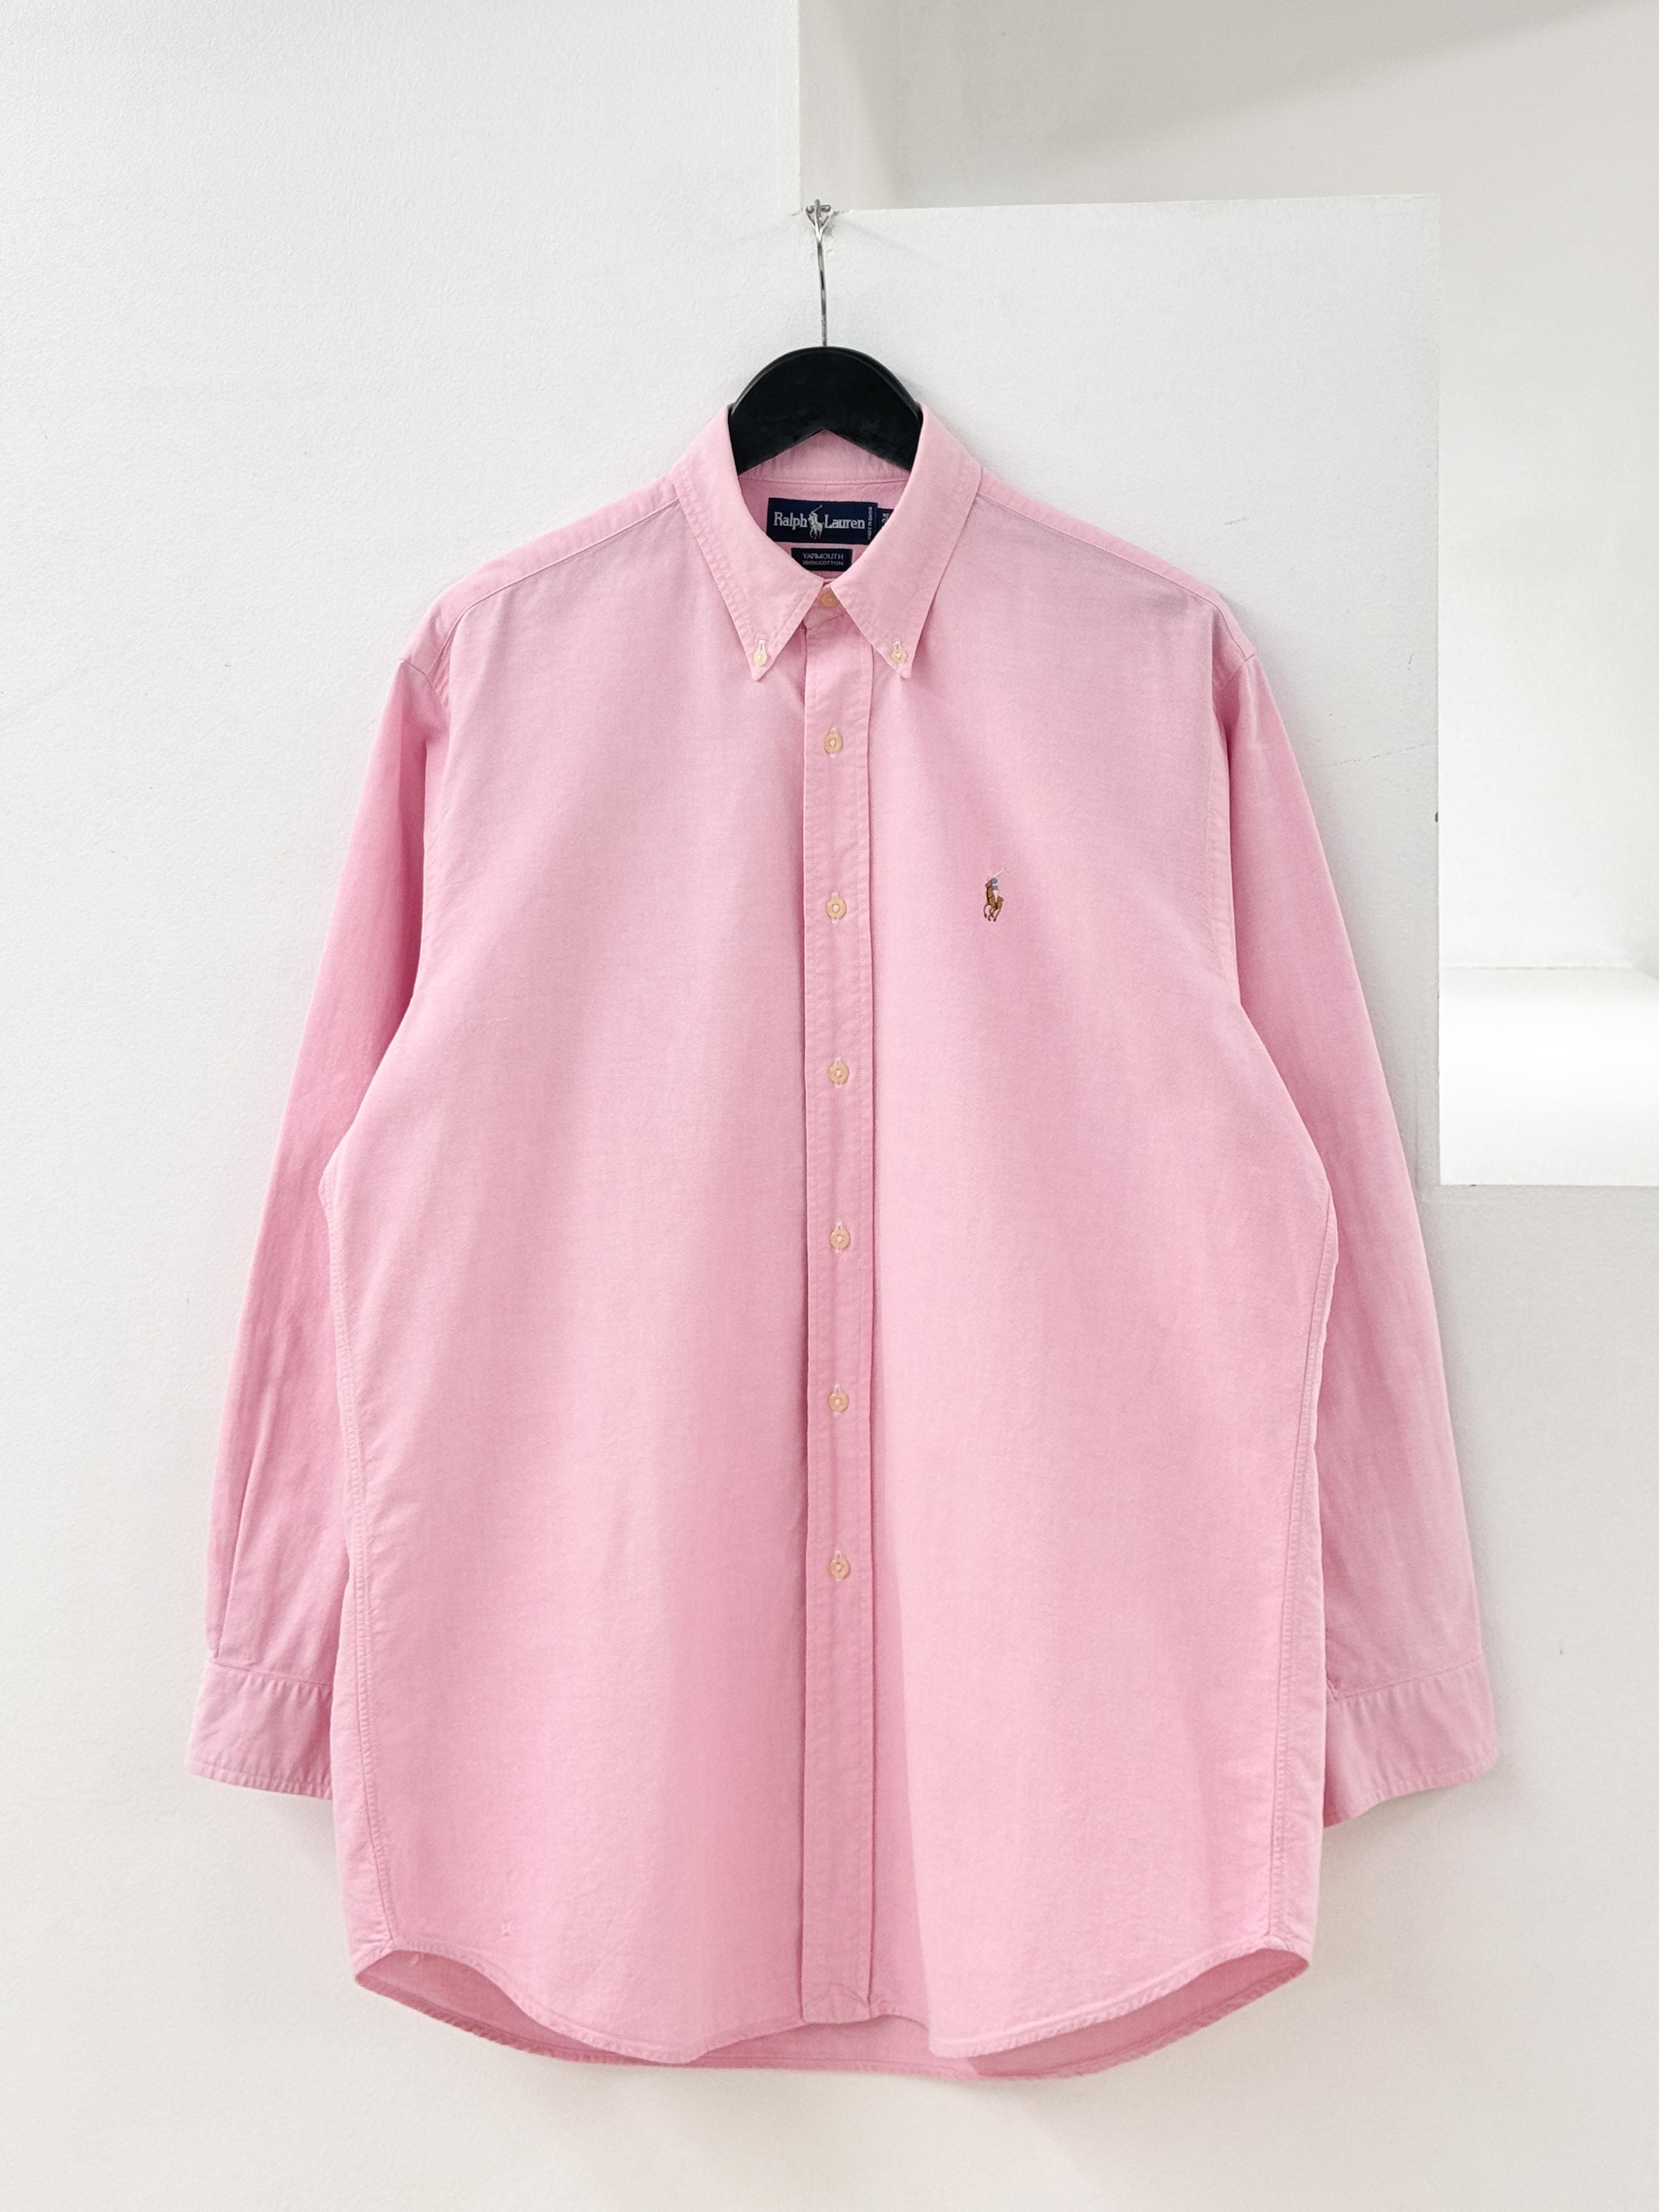 RalphLauren pink oxford shirts